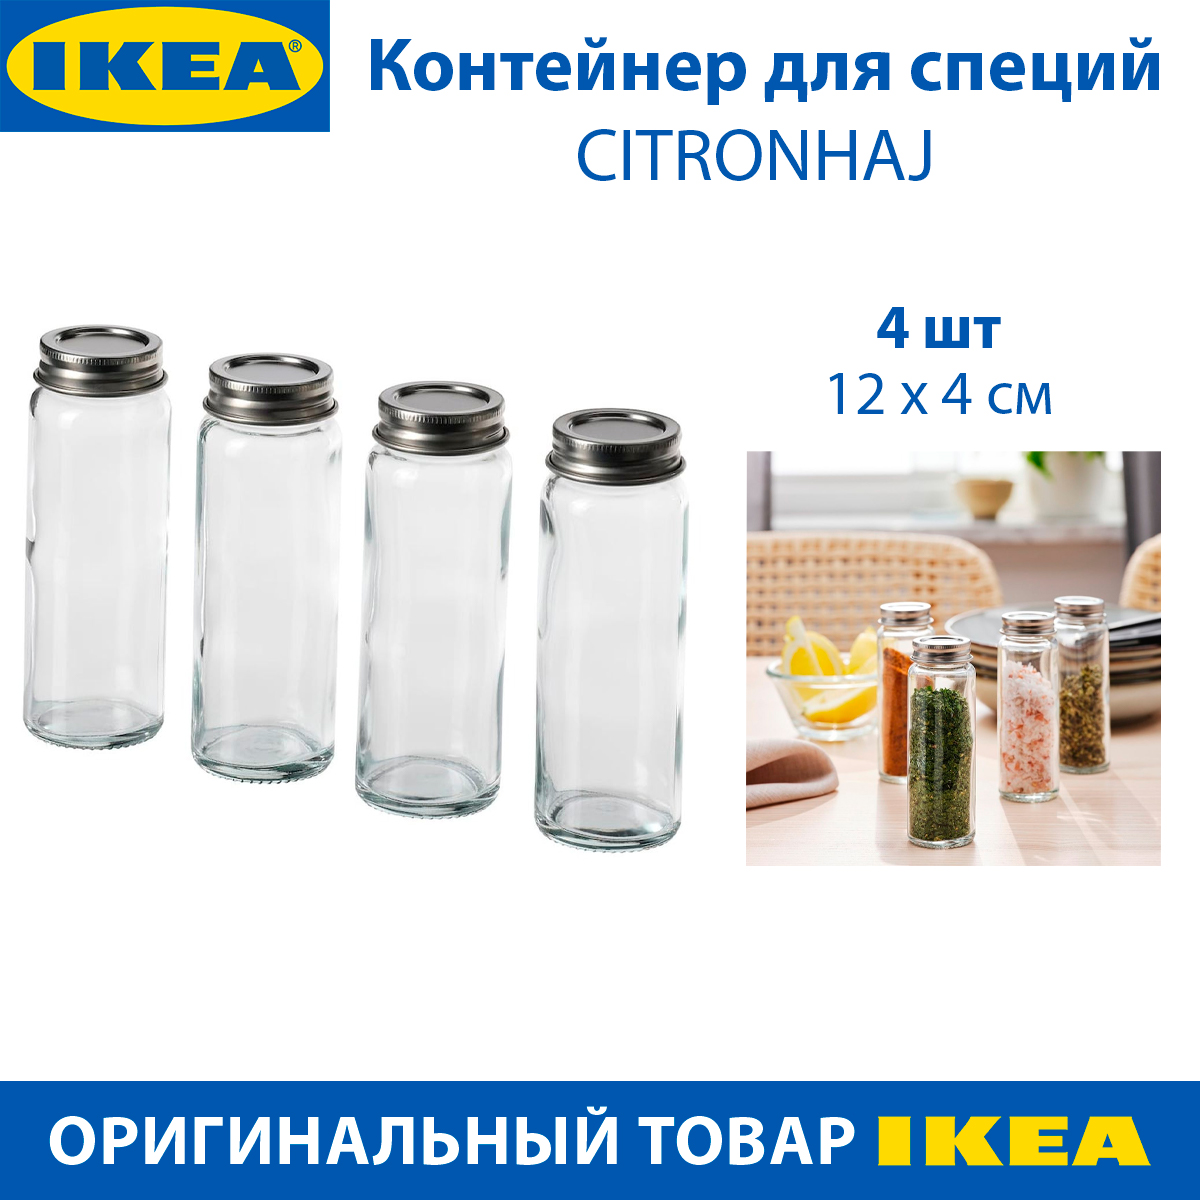 Контейнер для специй IKEA - CITRONHAJ из стекла, 4 штуки в упаковке